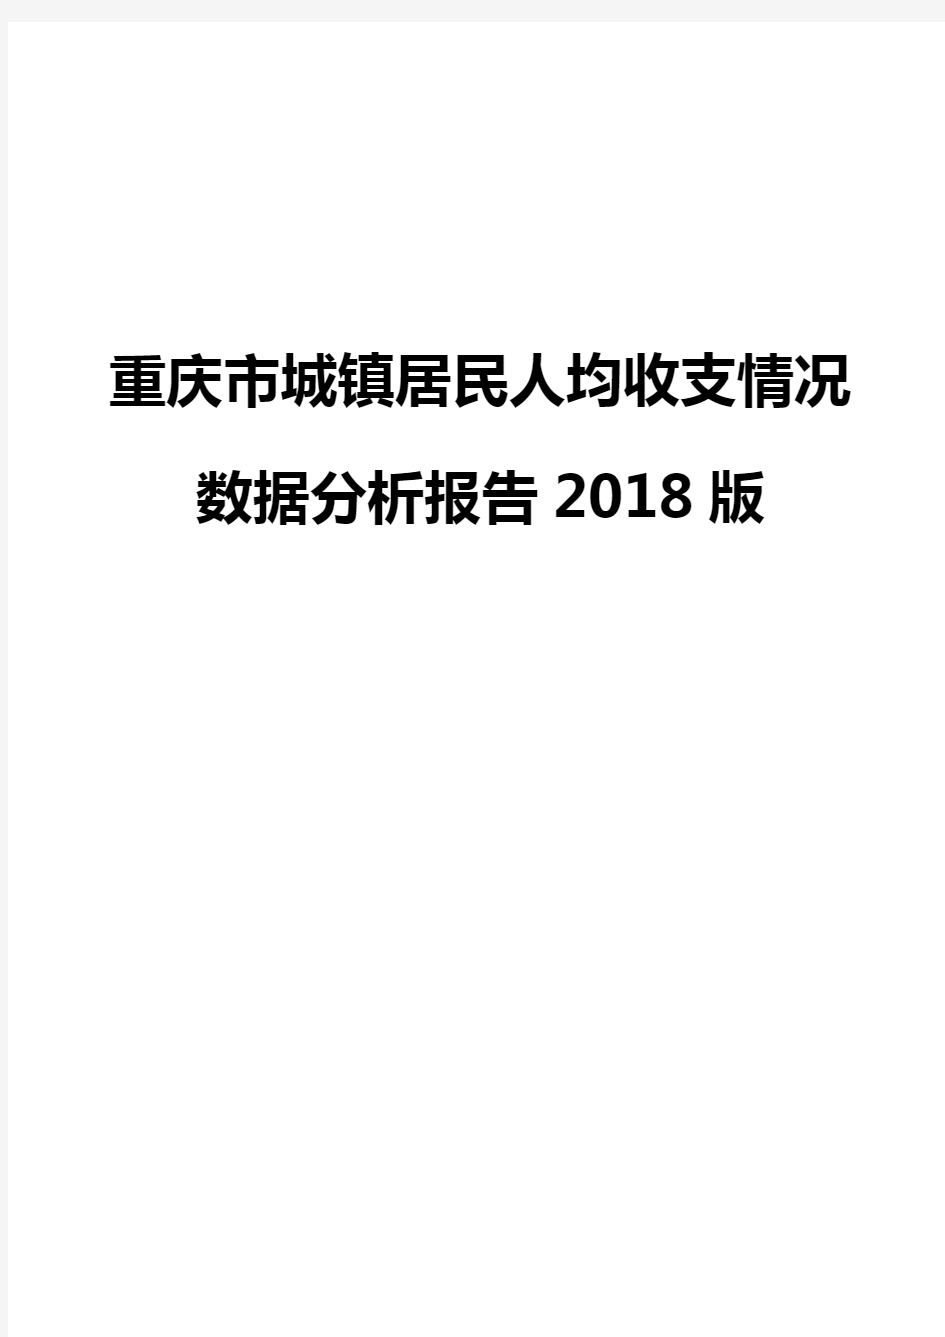 重庆市城镇居民人均收支情况数据分析报告2018版